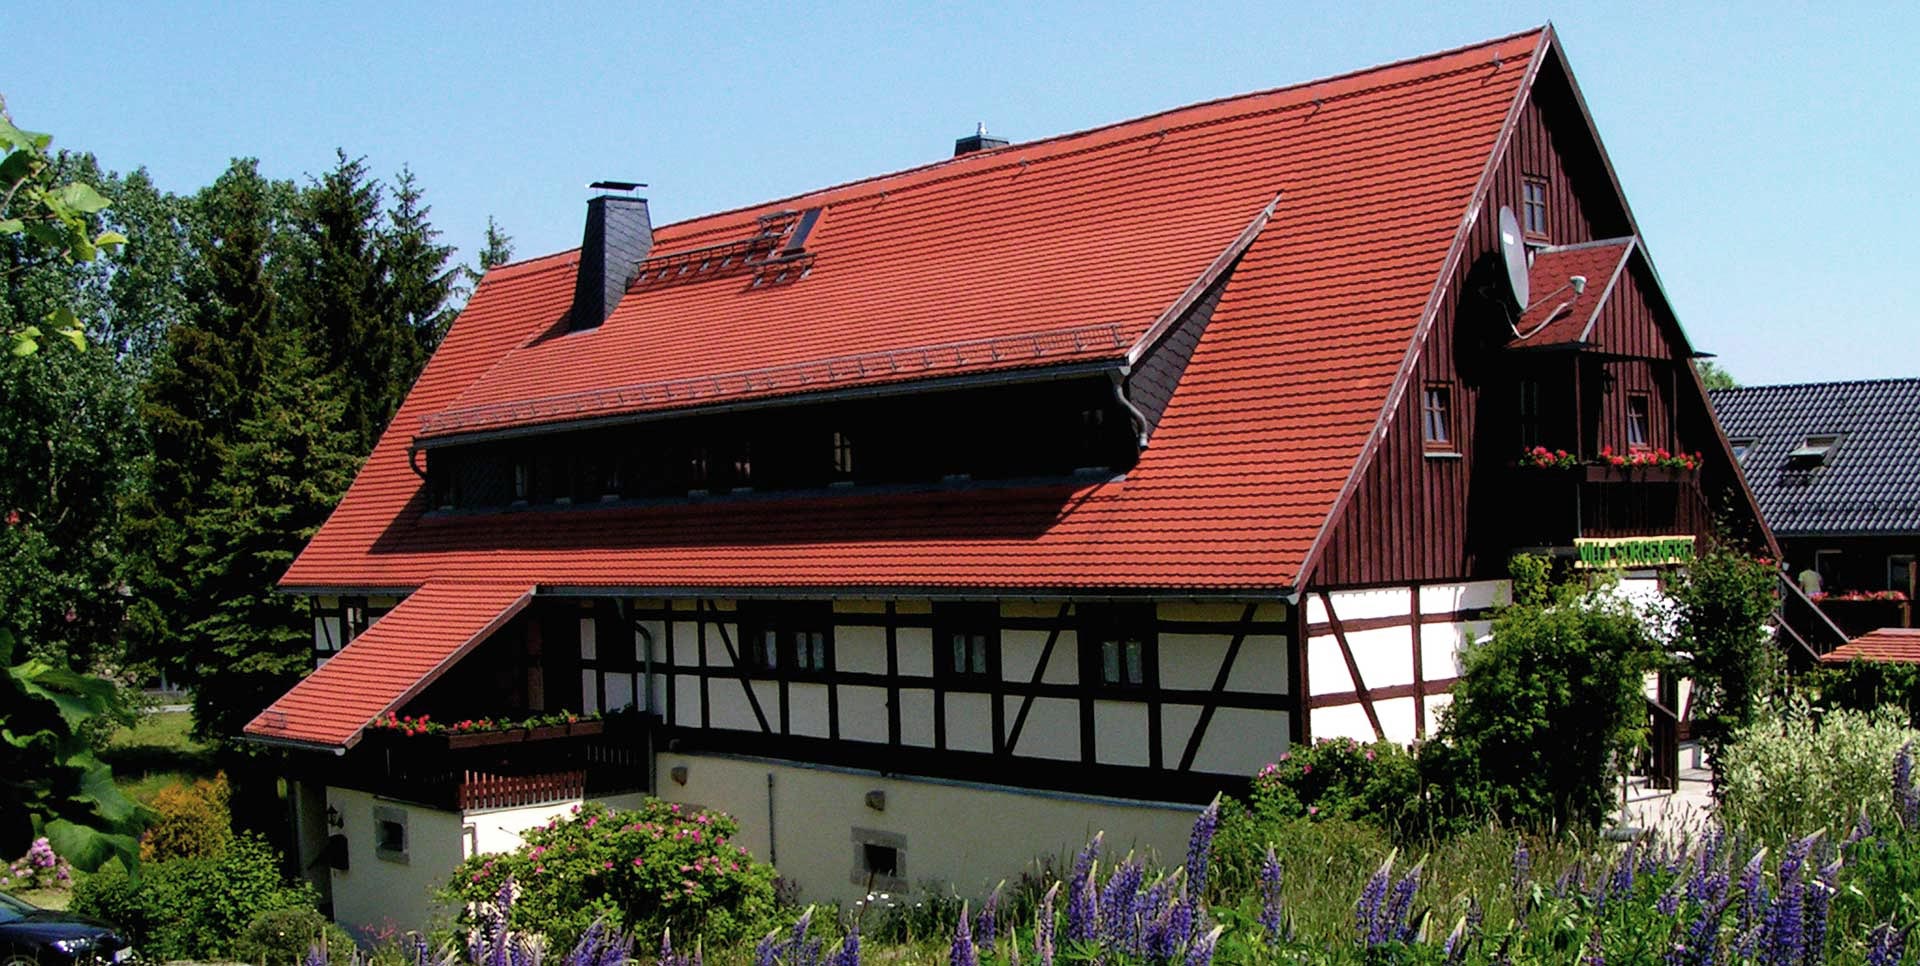 Landhaus Sorgenfrei